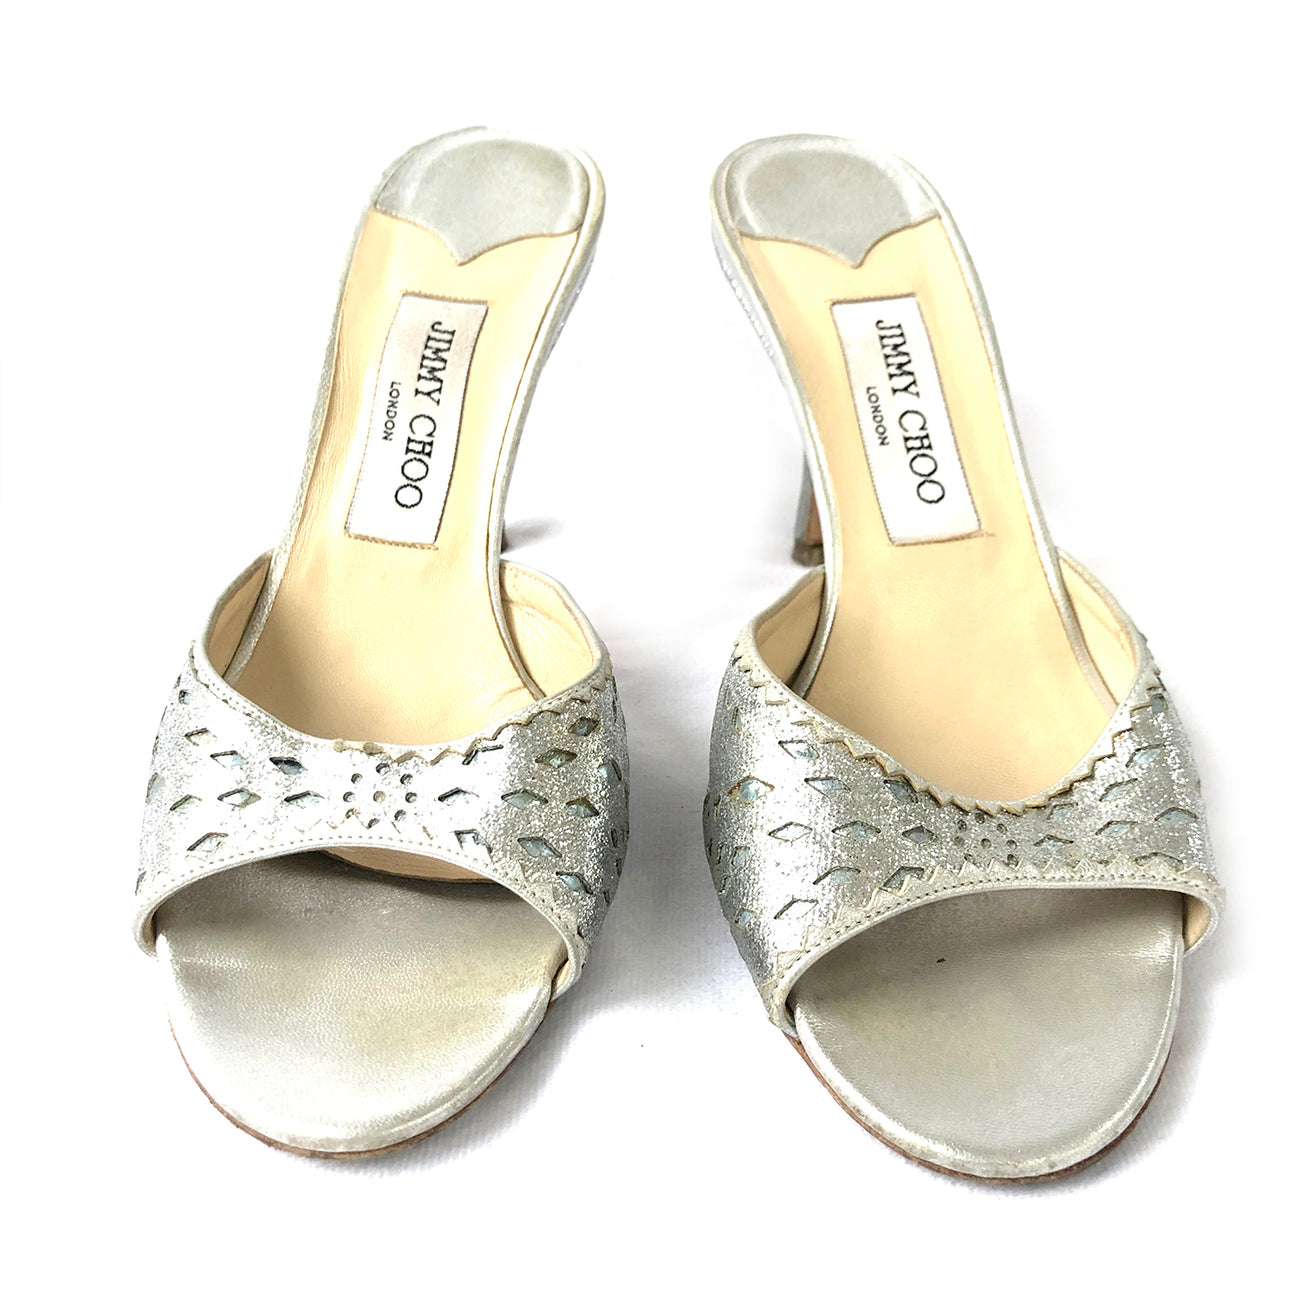 Jimmy Choo Fancie 120 Sandal in Silver Metallic, Size 40